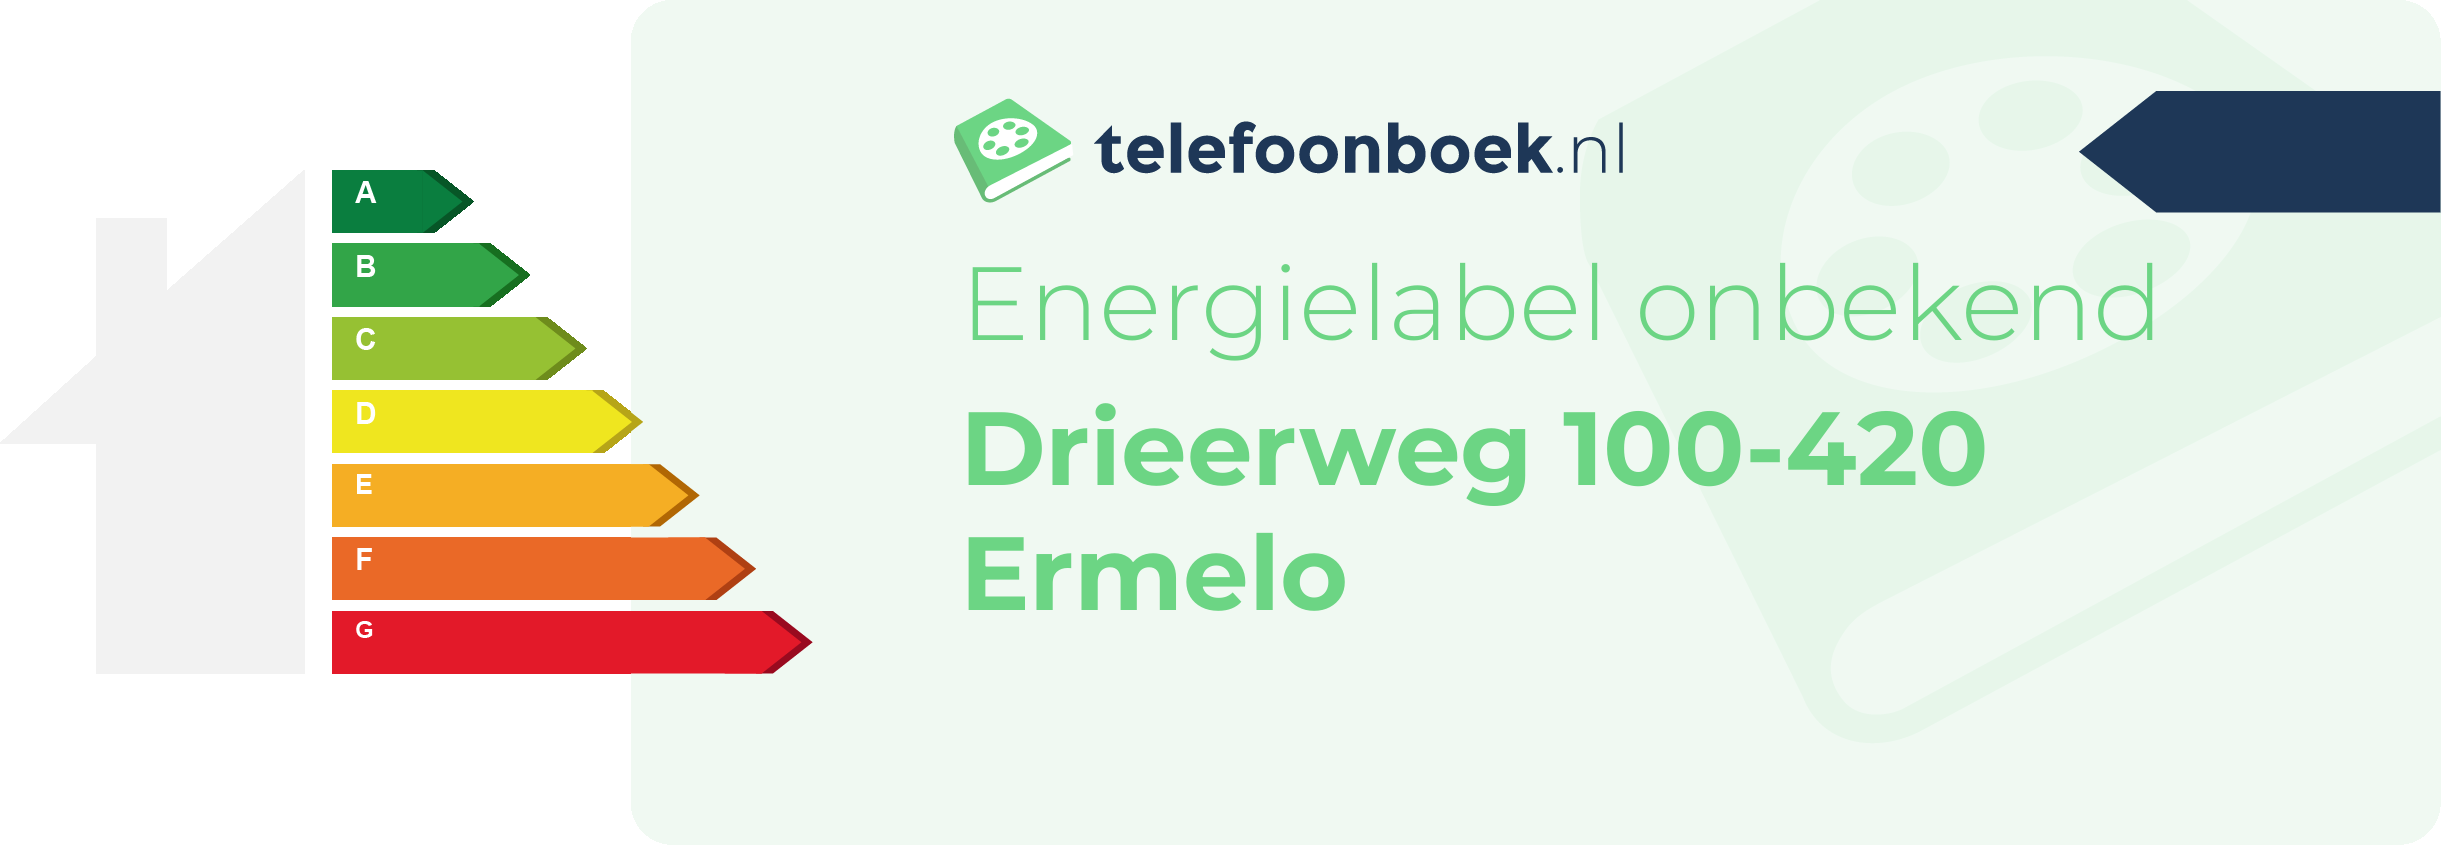 Energielabel Drieerweg 100-420 Ermelo